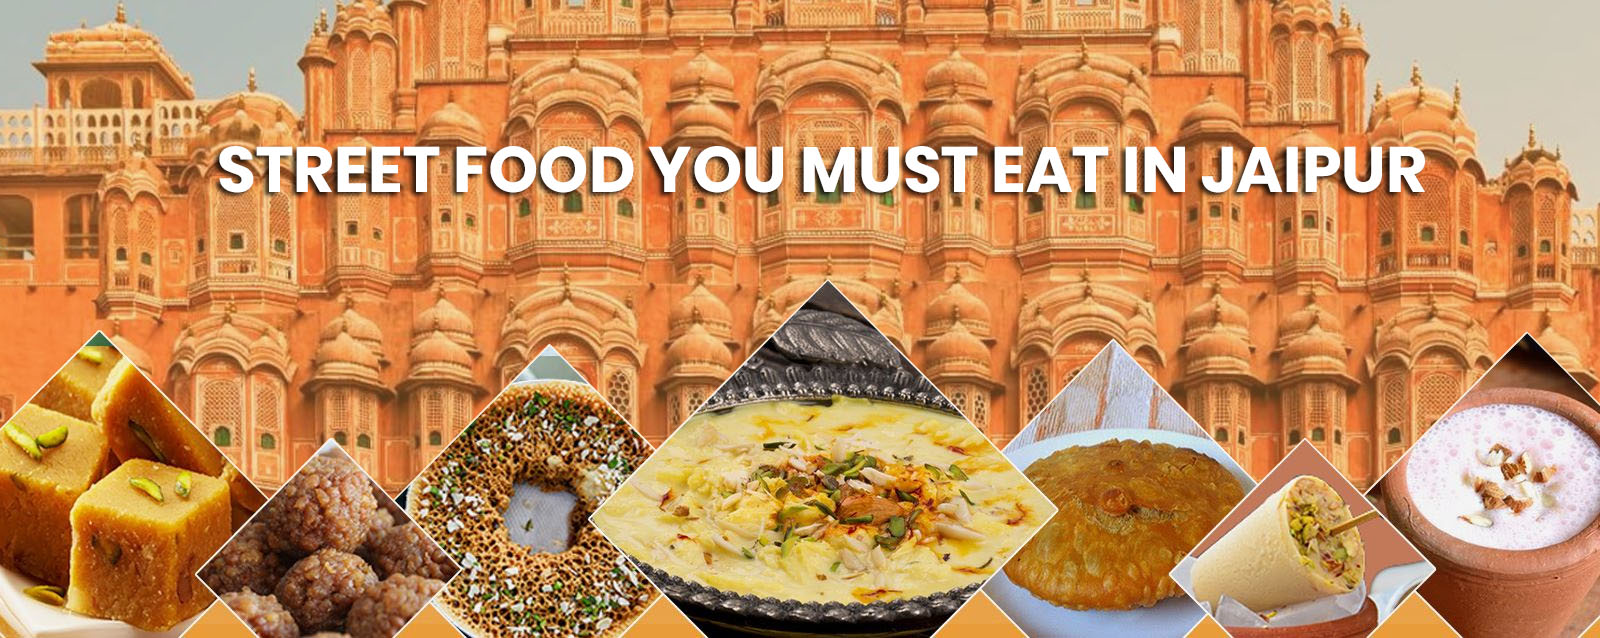 Street food you must eat in Jaipur